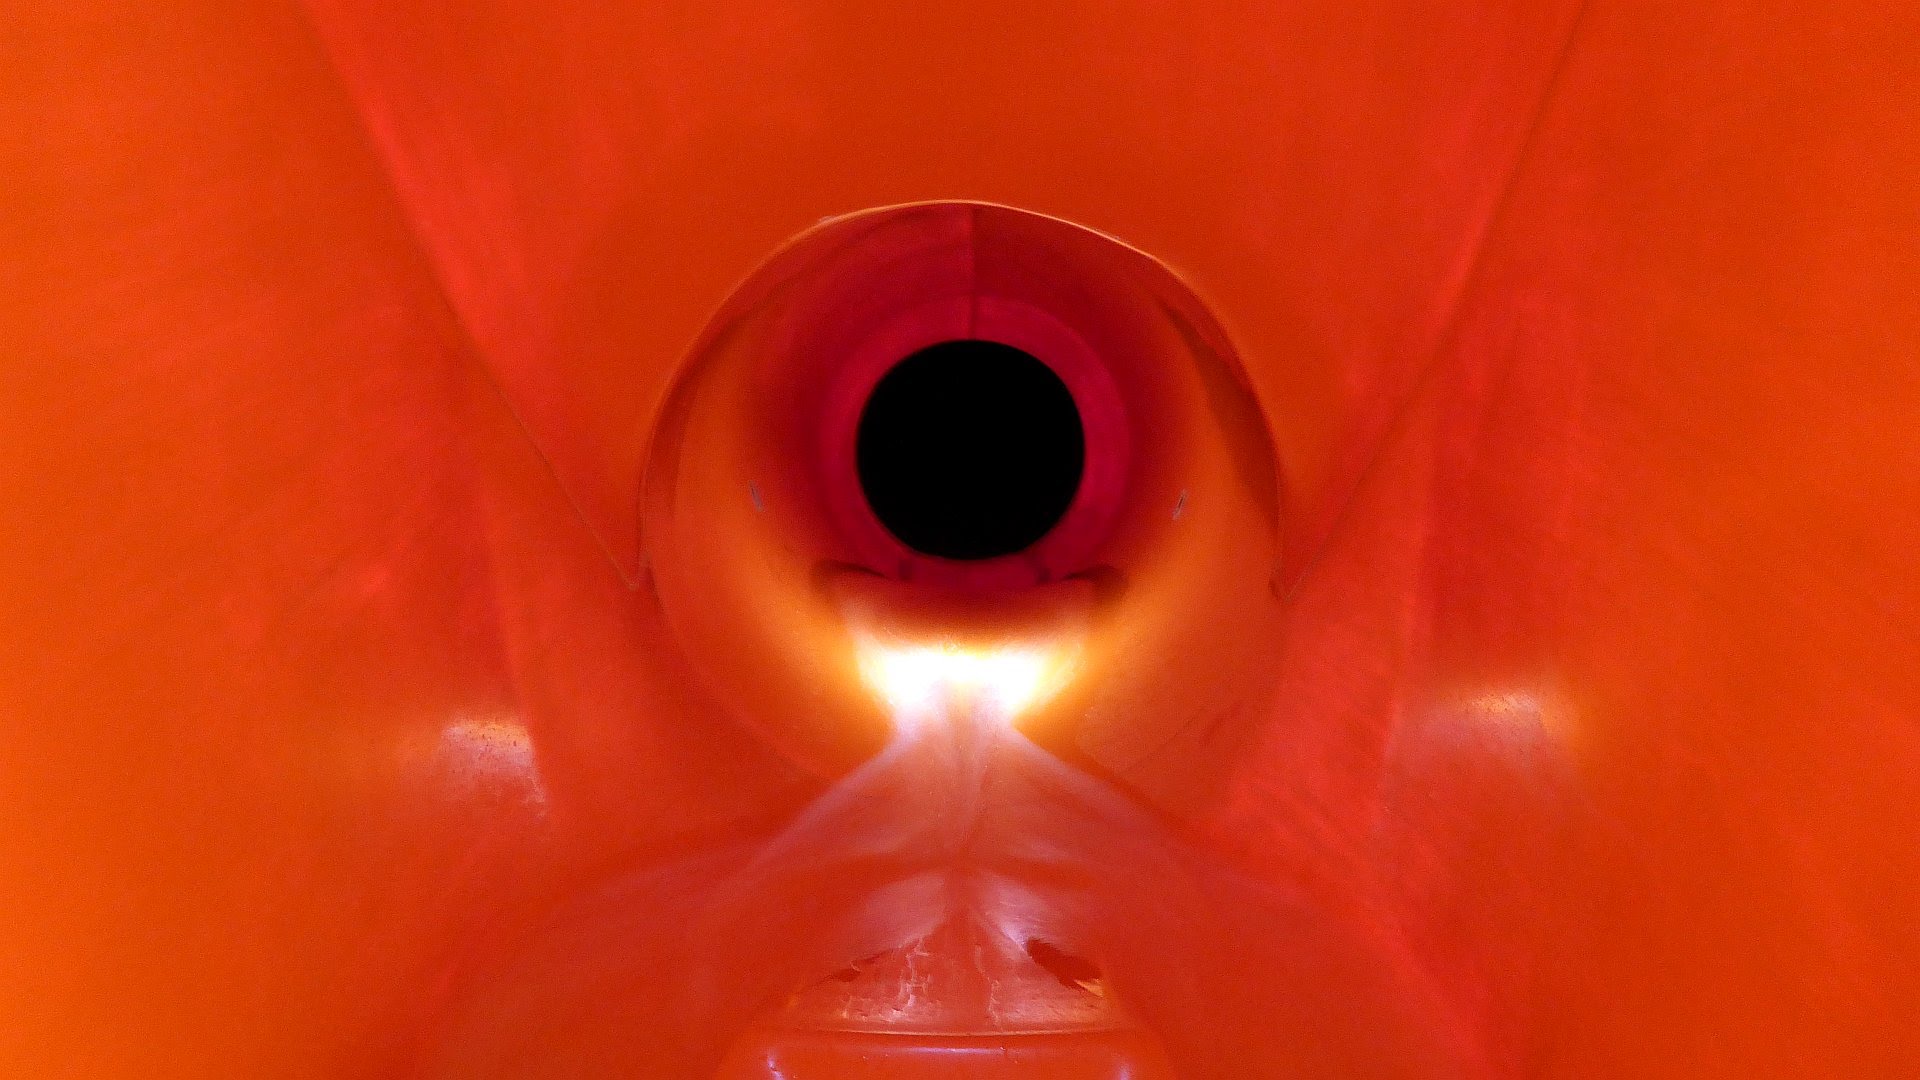 Black Hole Röhrenrutsche "Sommer: Vanilje" | Dyreparken Badelandet Kristiansand